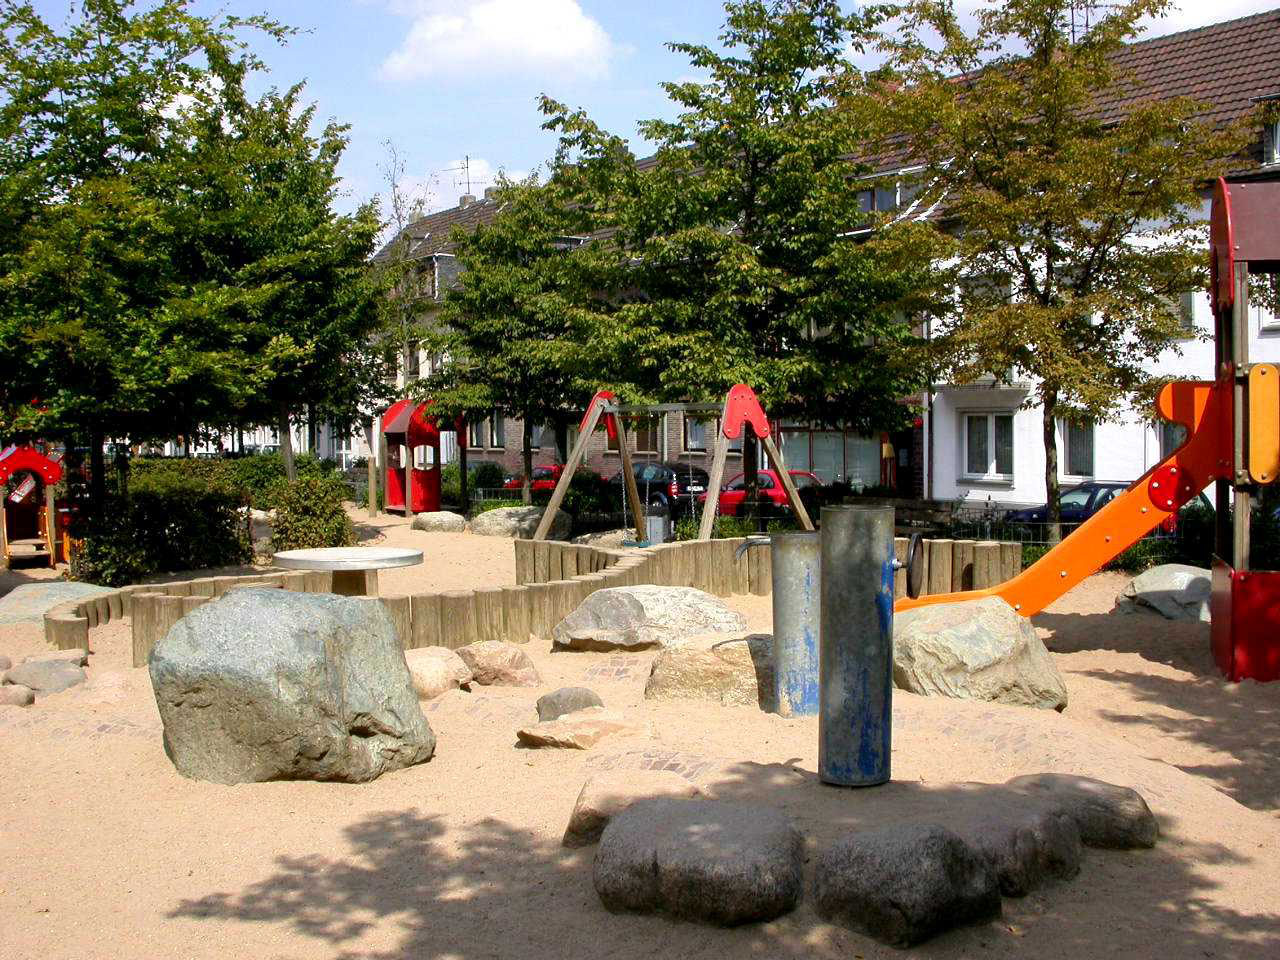 Der öffentliche Kinderspielplatz Gartenstraße wird von den Kindern der städtischen Tageseinrichtung für Kinder / Familienzentrum Lutherische-Kirch-Straße als Außenspielbereich genutzt.